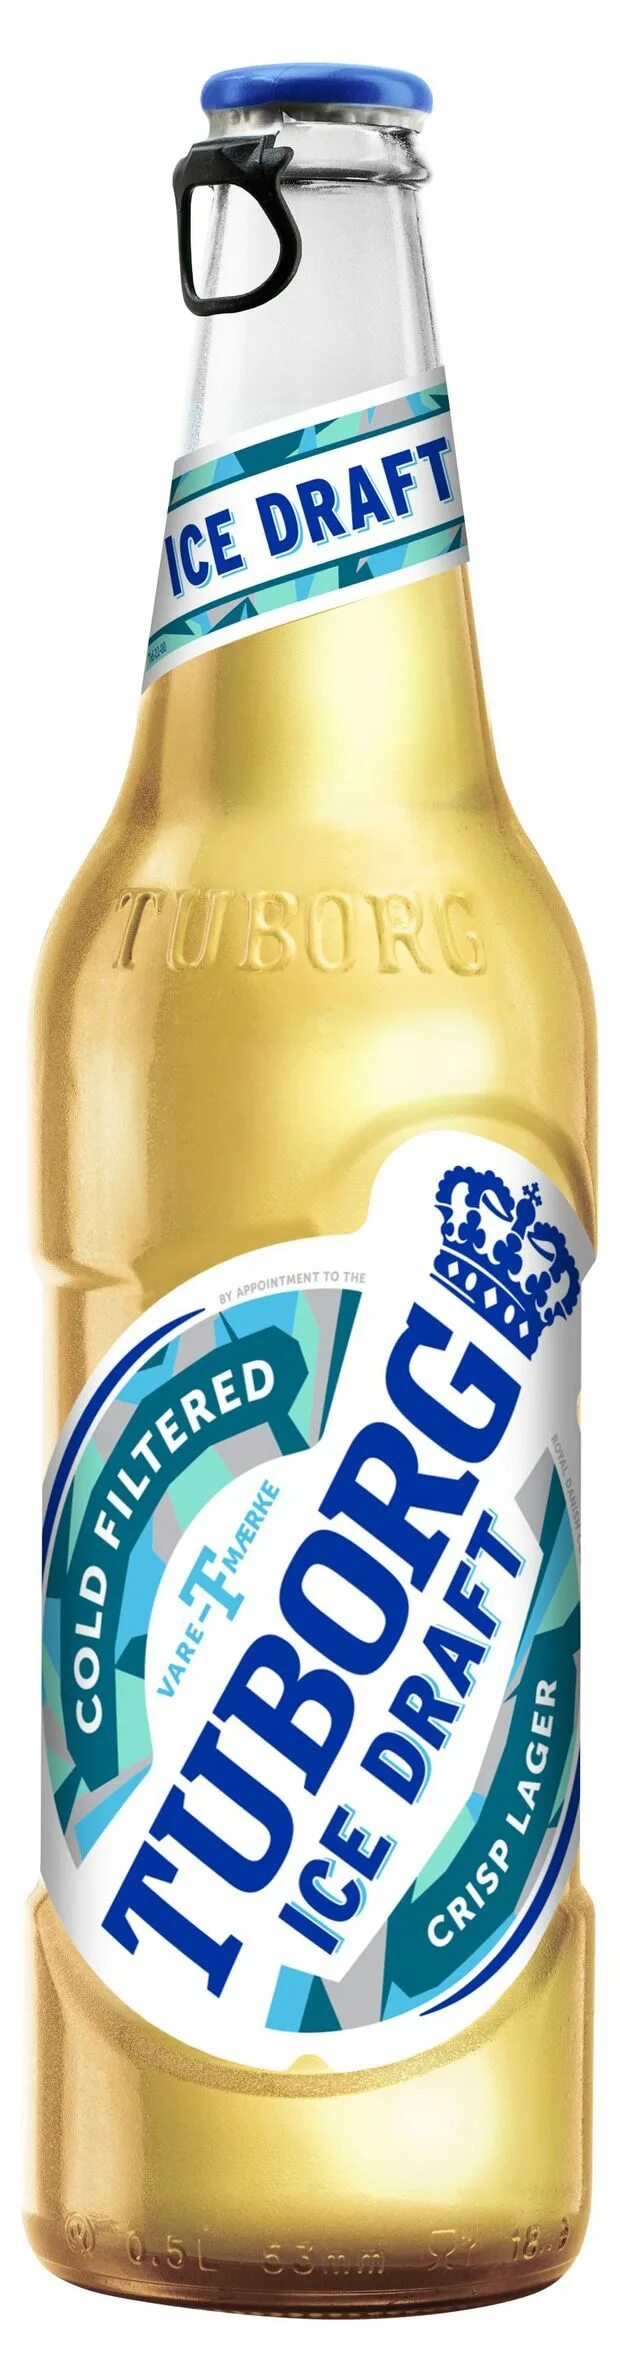 Пиво туборг айс ДРАФТ. Пиво Tuborg Ice Draft 4.2. Туборг пиво светлое 0.48. Пиво туборг светлое. Айс драфт